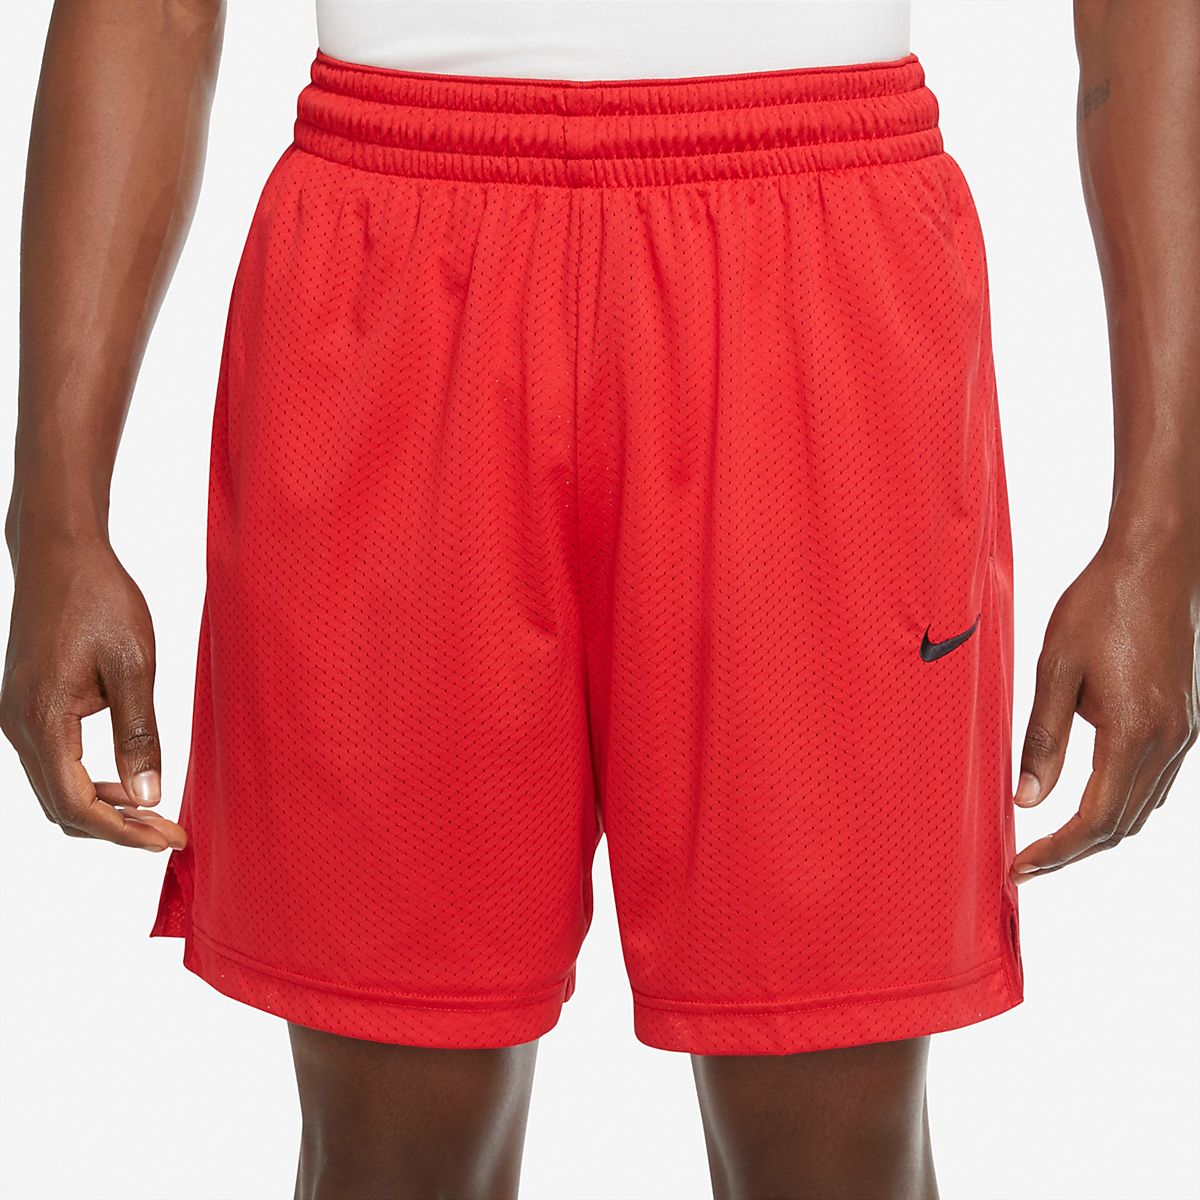 Boston Celtics Men's Nike NBA Mesh Shorts.